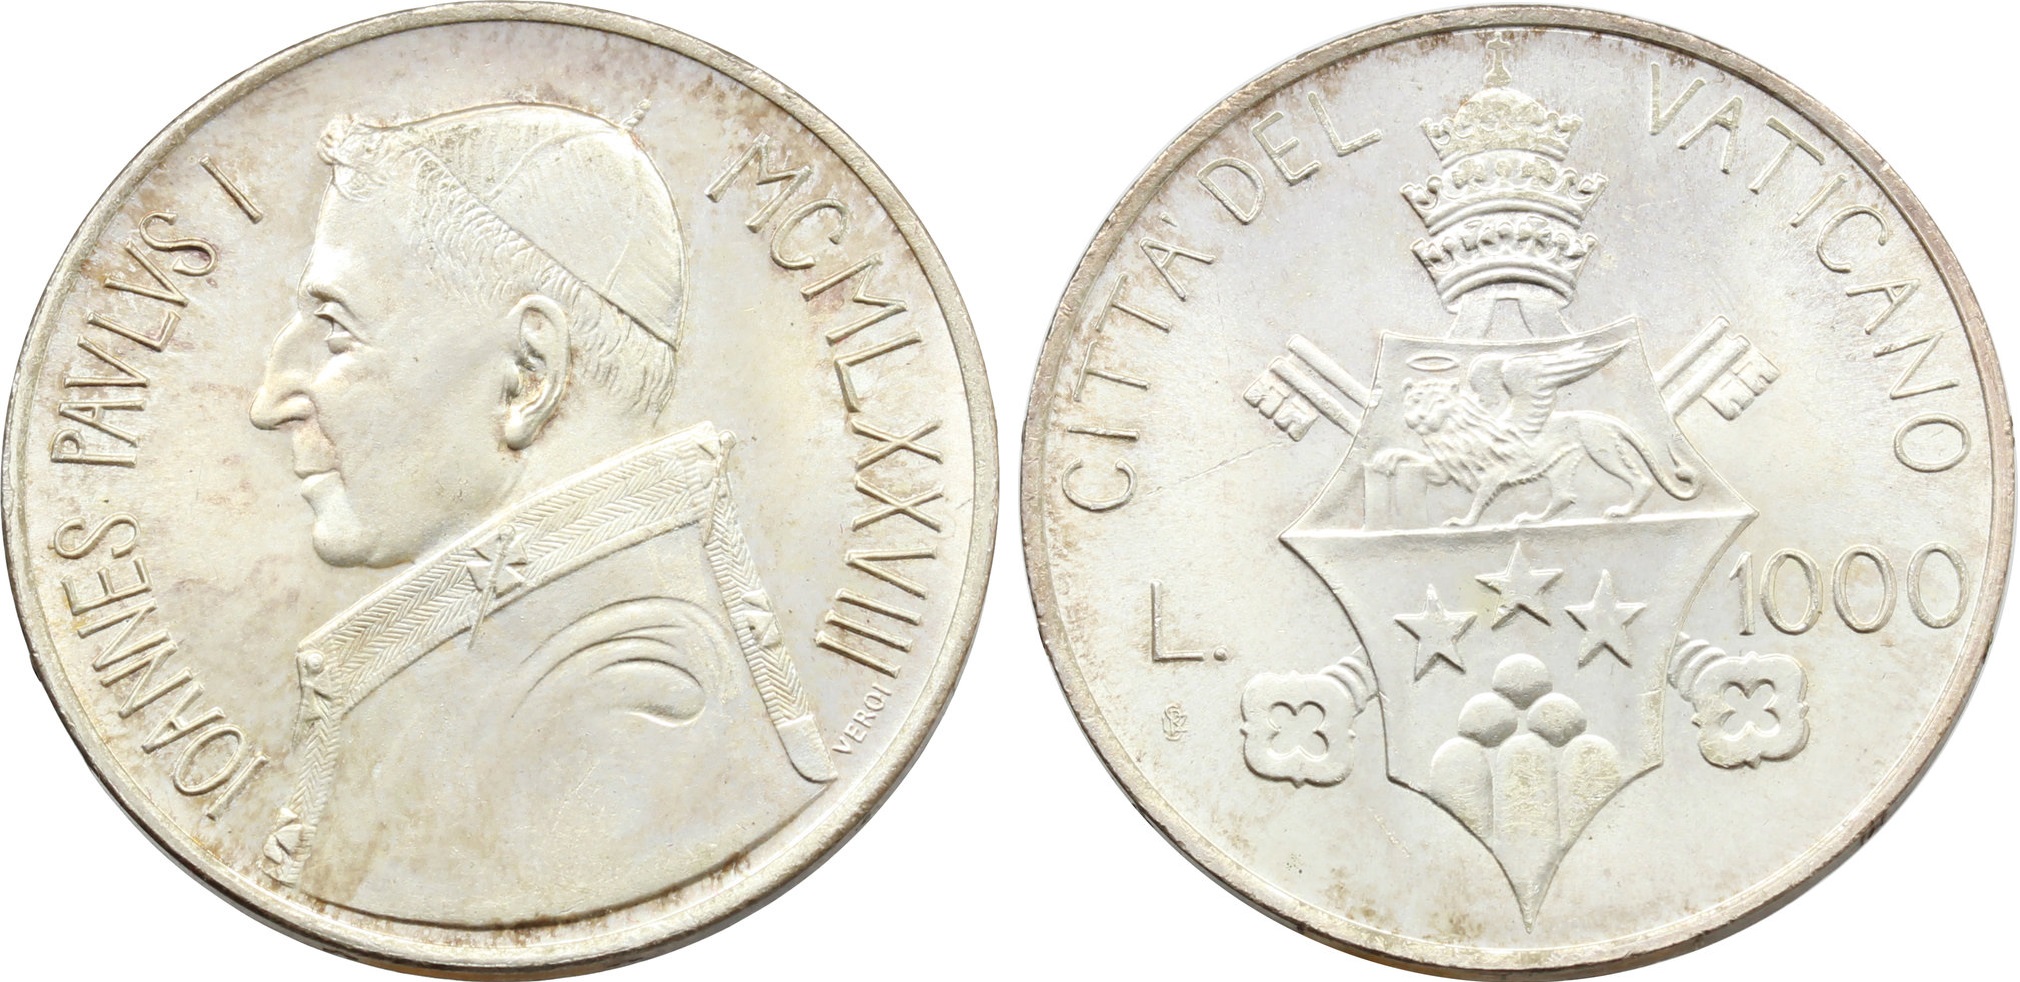 Le 1000 lire in argento che Karol Wojtyla, suo successore, volle per ricordare papa Luciani